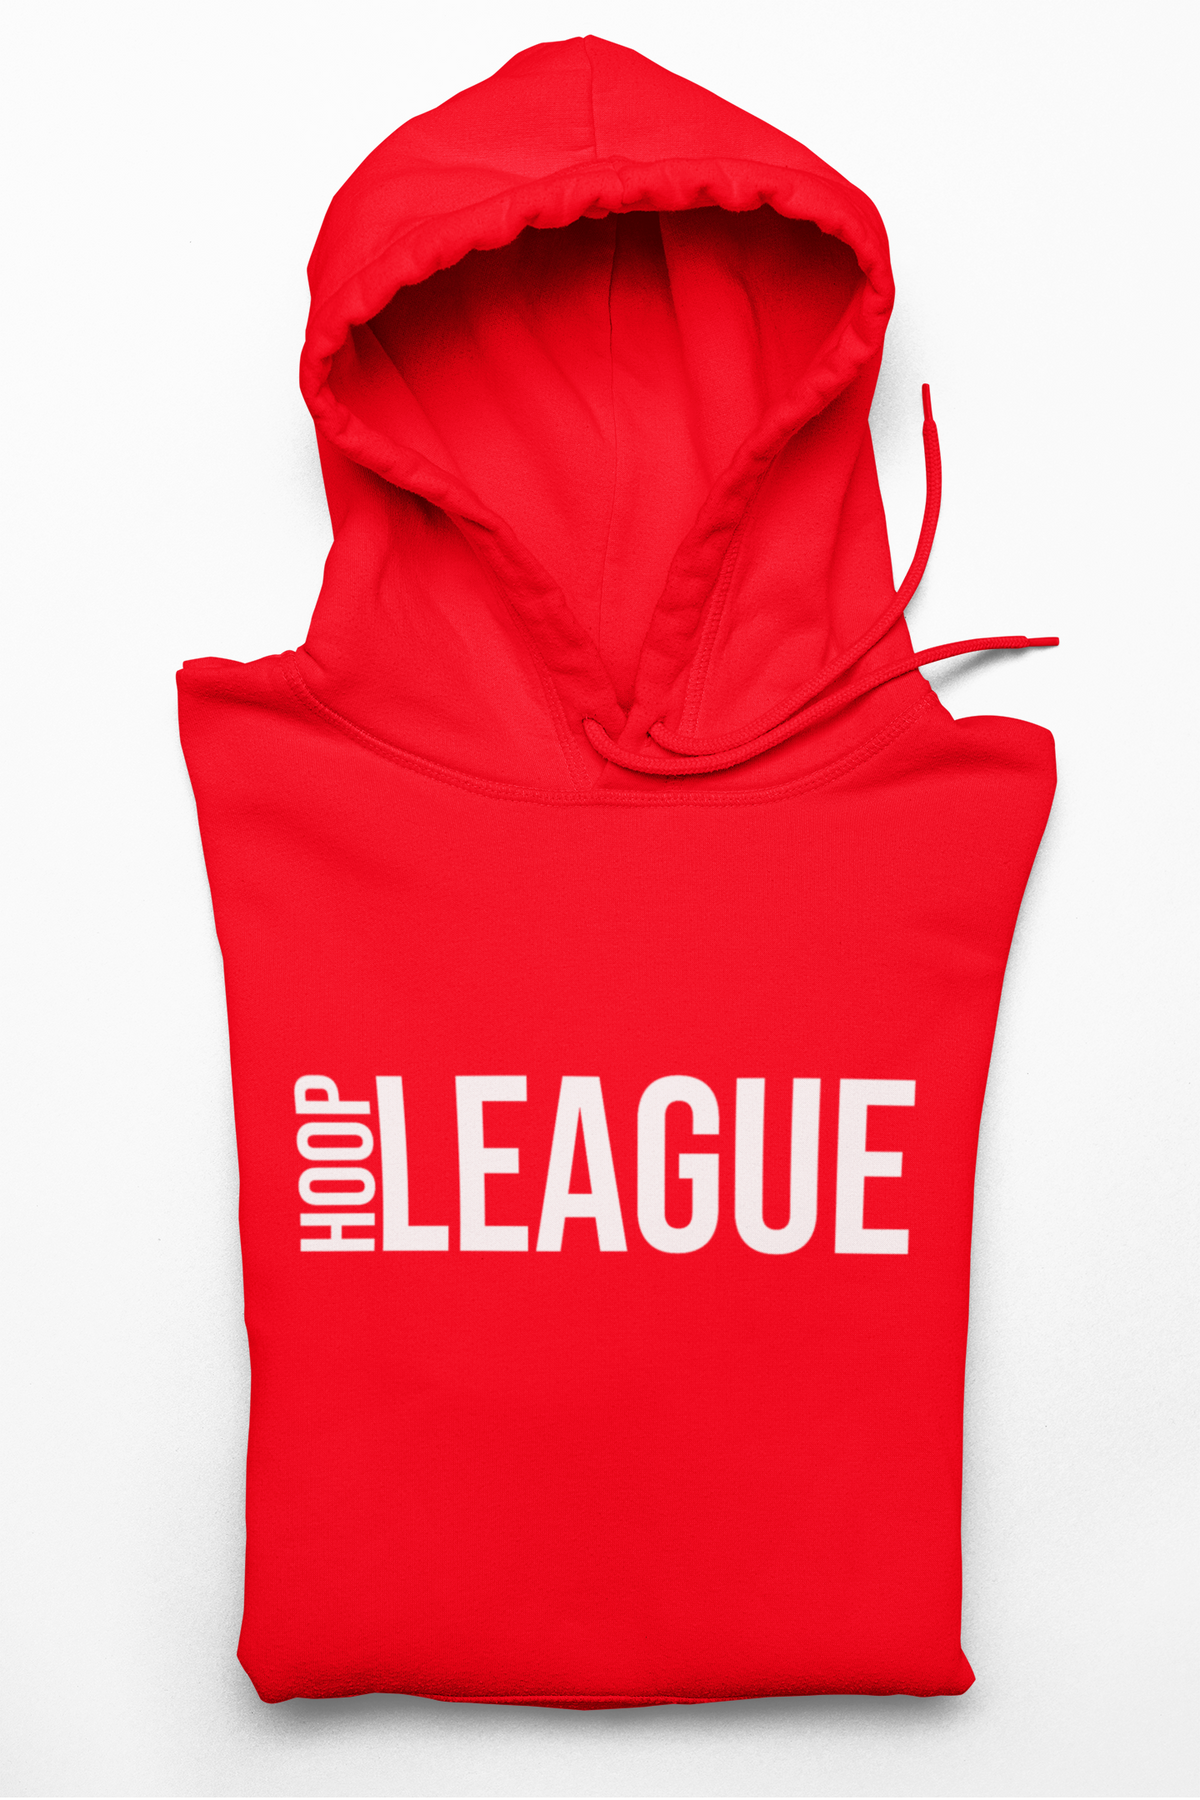 Hoop League Pullover Red Hoodie | Pullover Red Hoodie